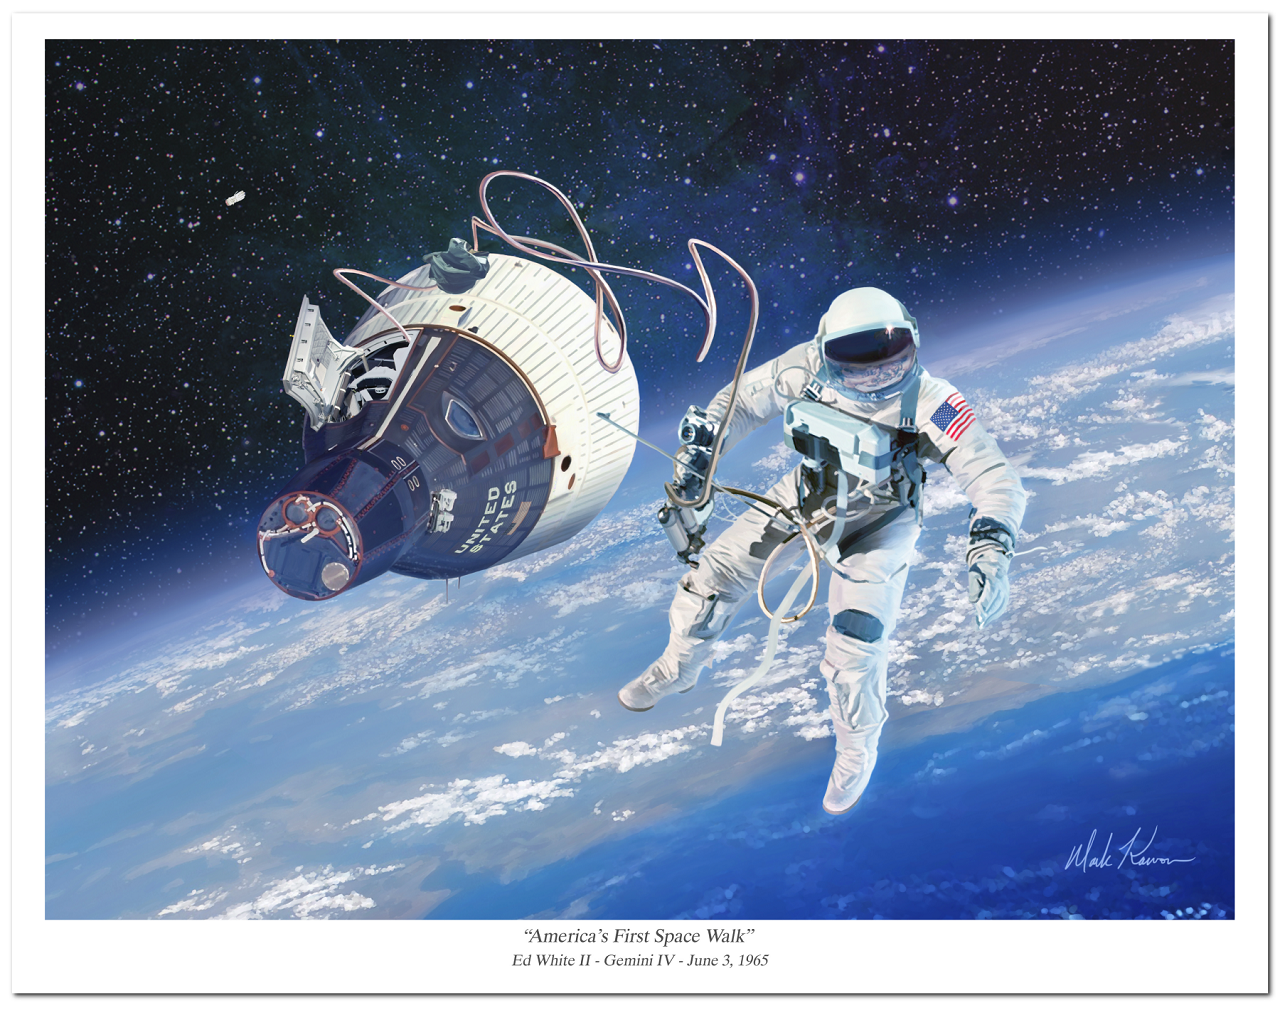 "America's First Space Walk" by Mark Karvon, Ed White II and Gemini IV